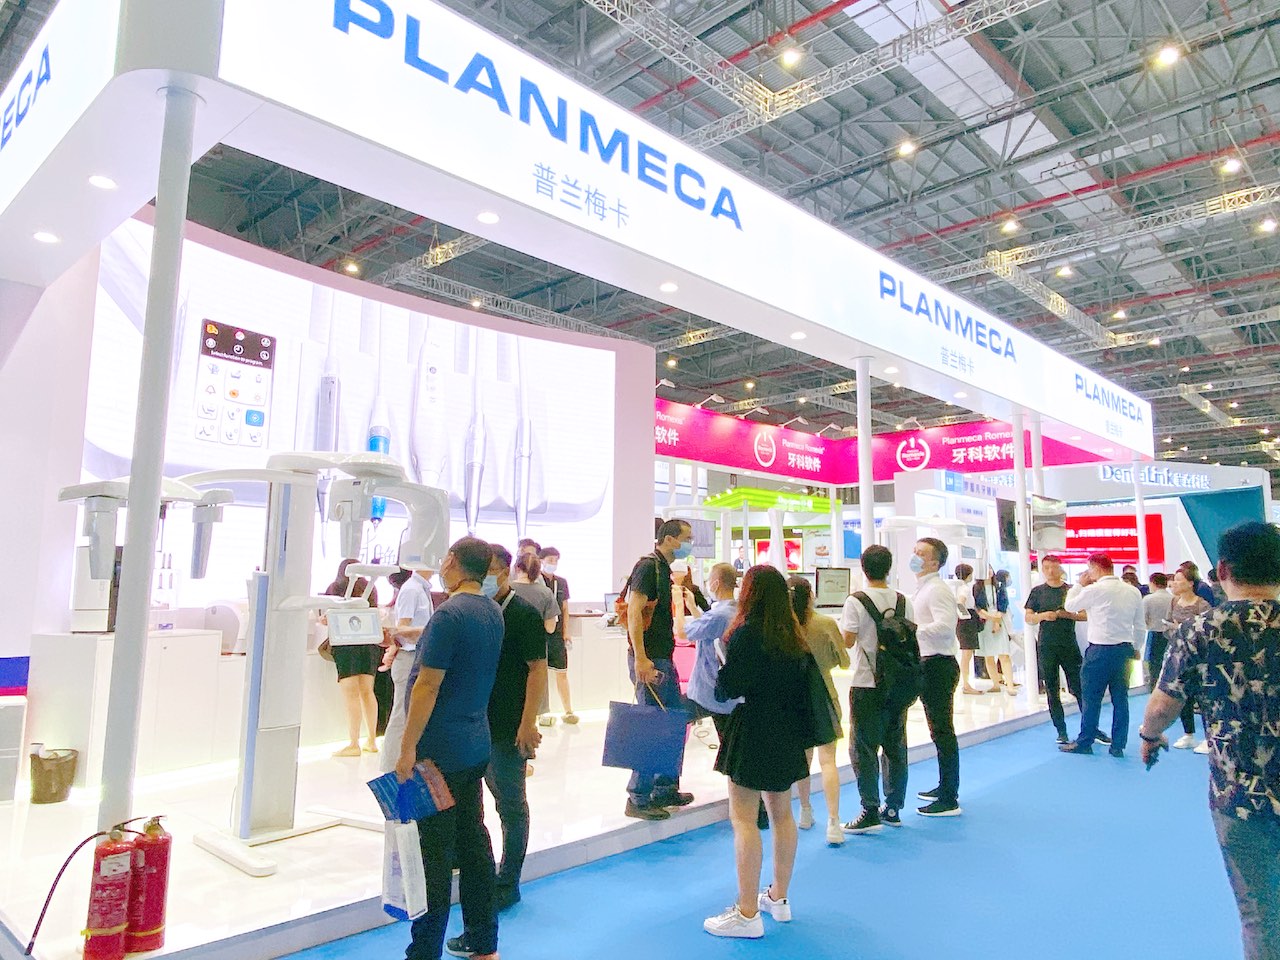 Planmeca-Stand auf der China Dental Show 2020 in Shanghai (Foto: Planmeca)